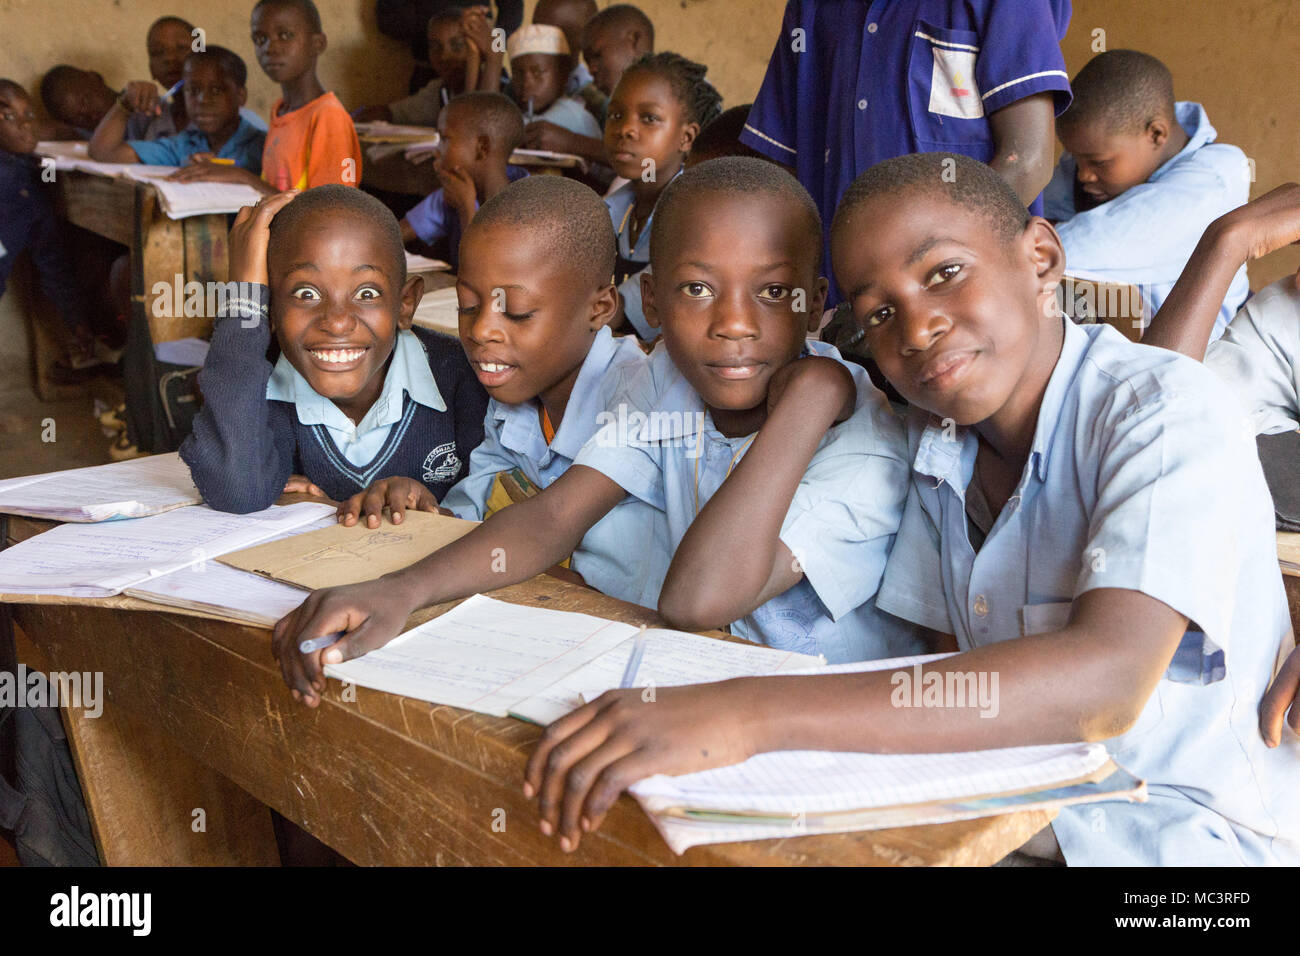 L'Ouganda. 13 juin 2017. Les enfants ougandais souriant assis à un bureau dans une salle de classe dans une école primaire. Banque D'Images